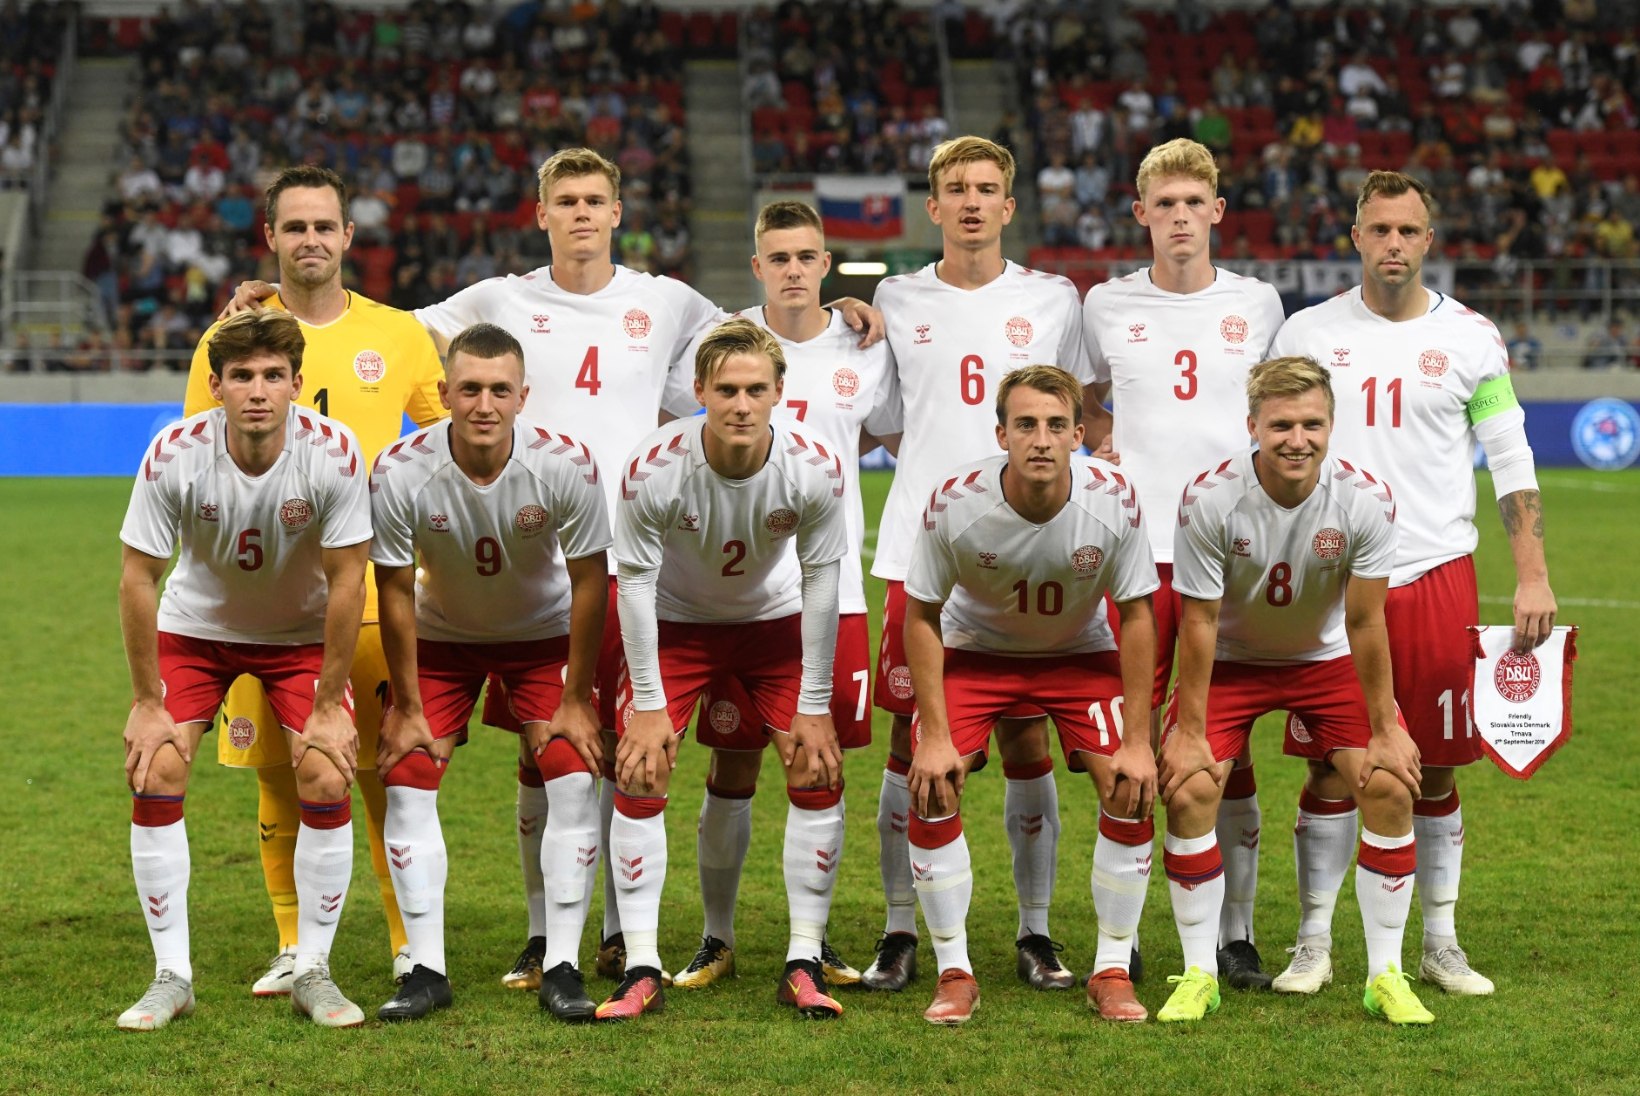 Müügimees, tudeng ja internetistaar - niisugused mängijad esindasid Taani jalgpallikoondist